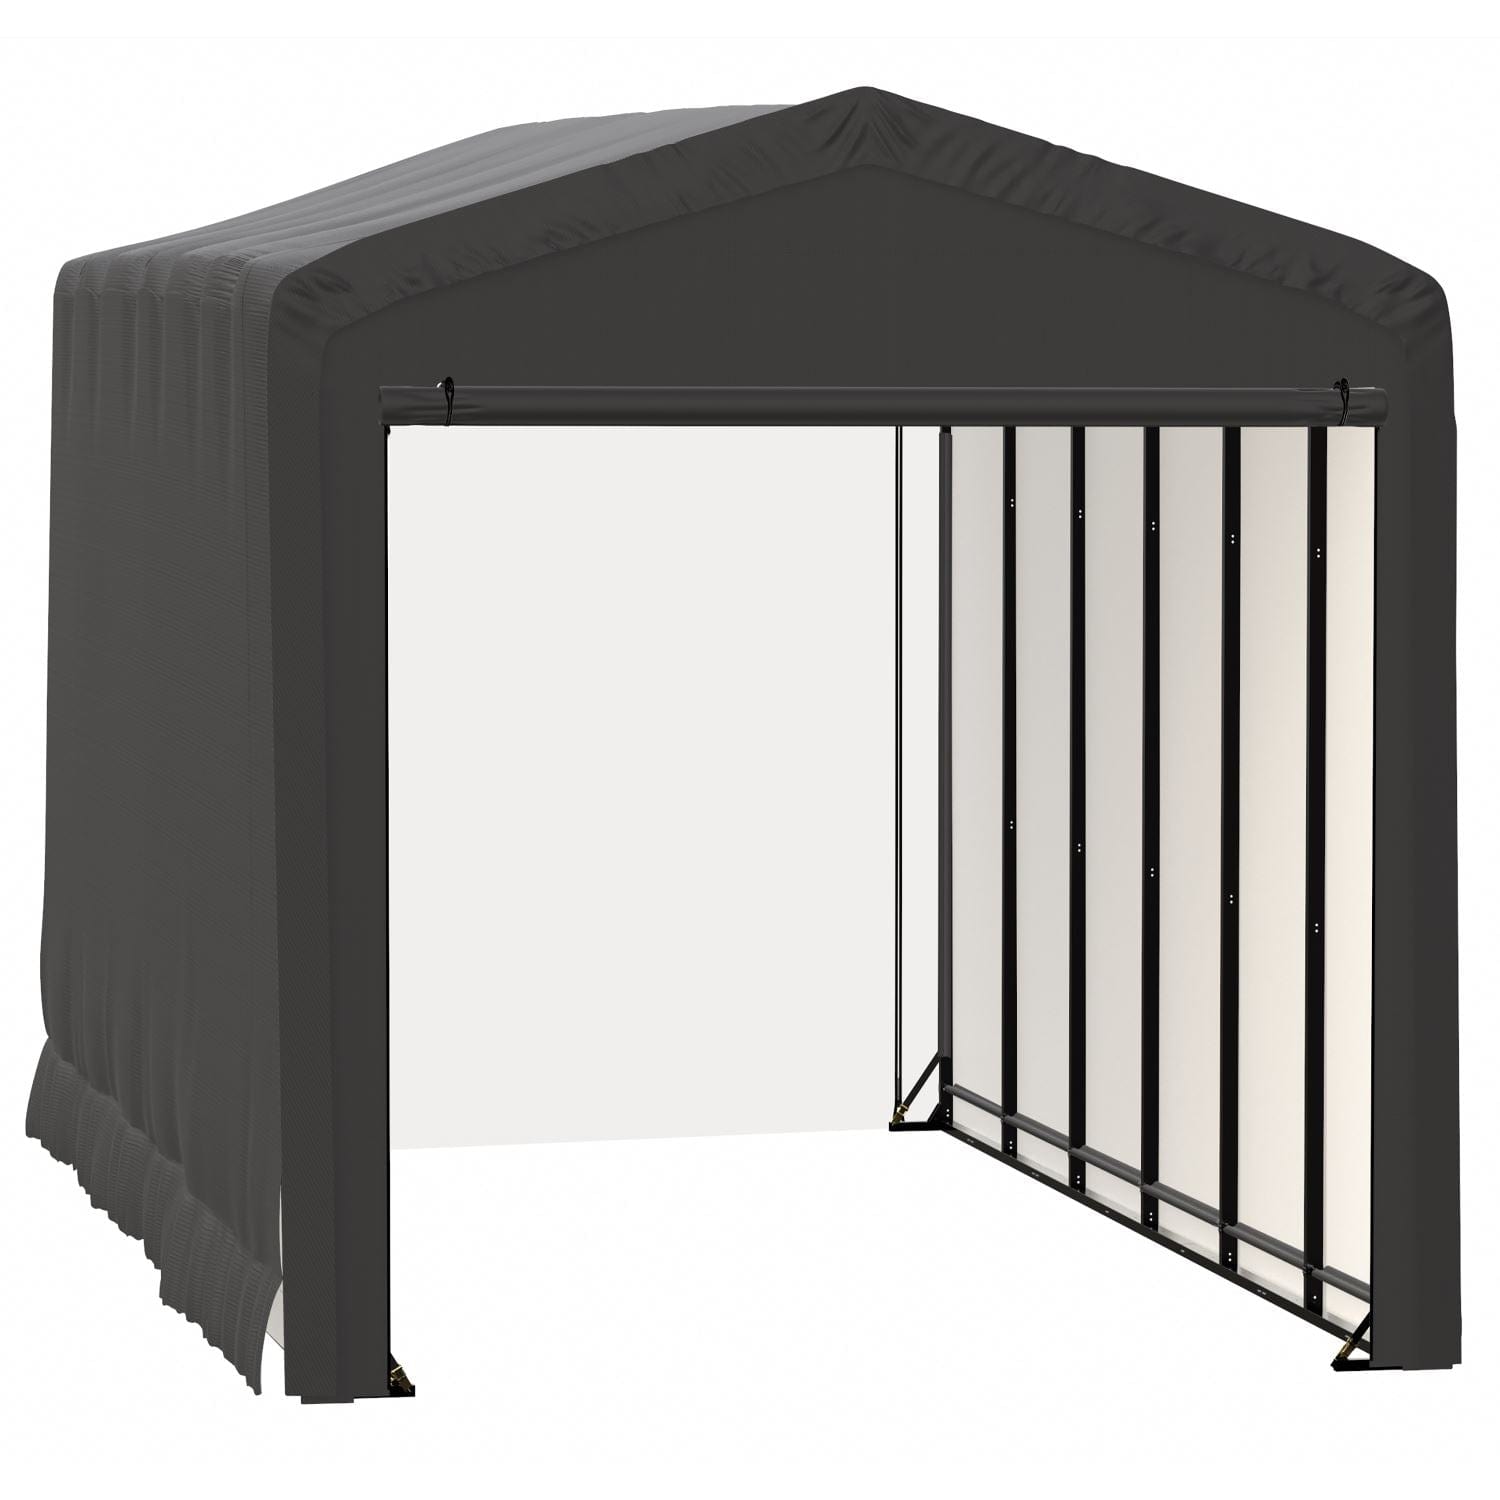 ShelterLogic Portable Garage ShelterLogic | ShelterTube Wind and Snow-Load Rated Garage 14x27x16 Gray SQAACC0103C01402716